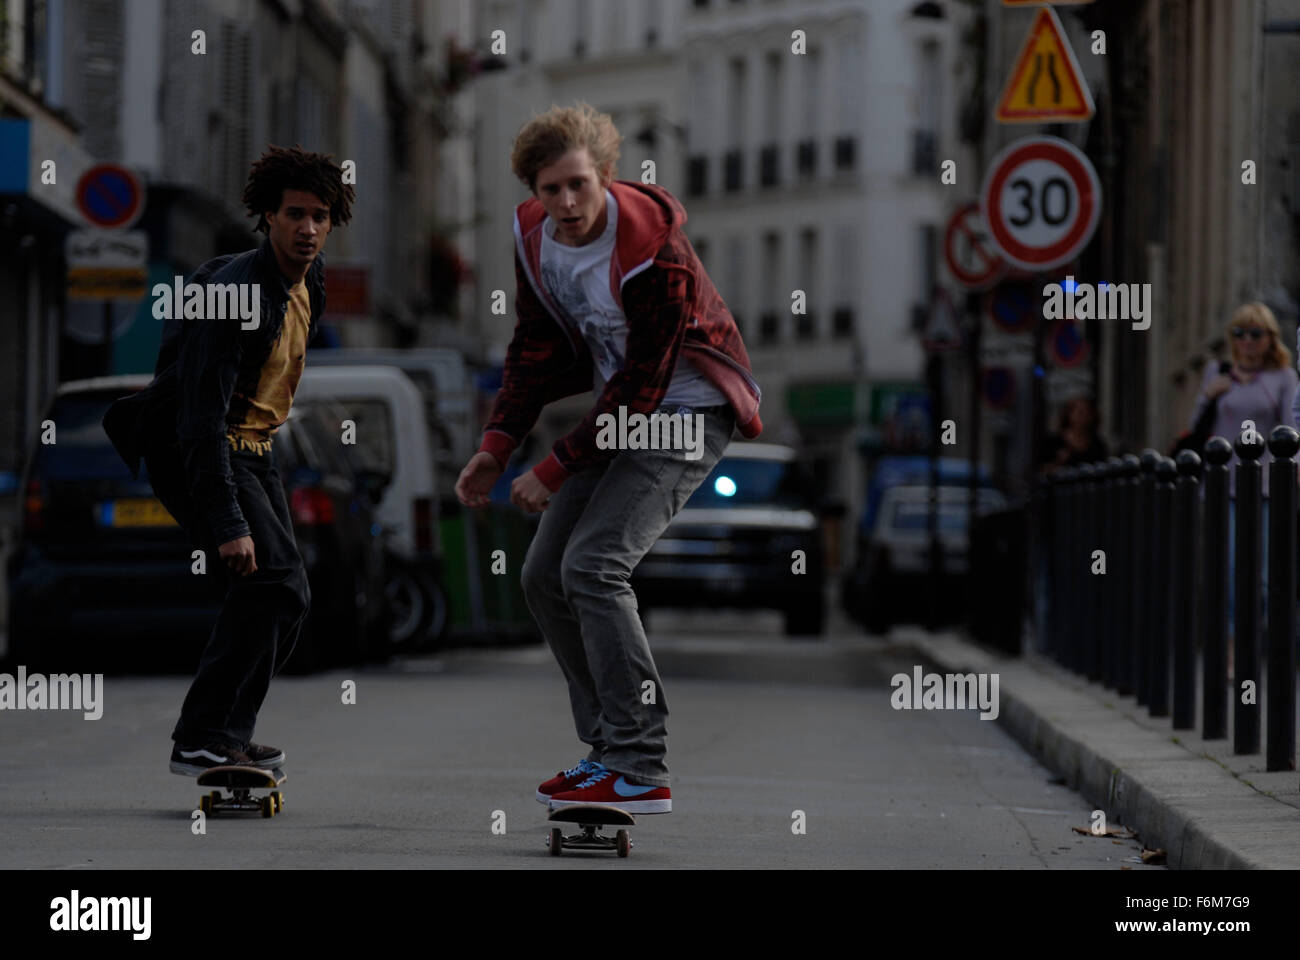 skate. - Official Trailer 